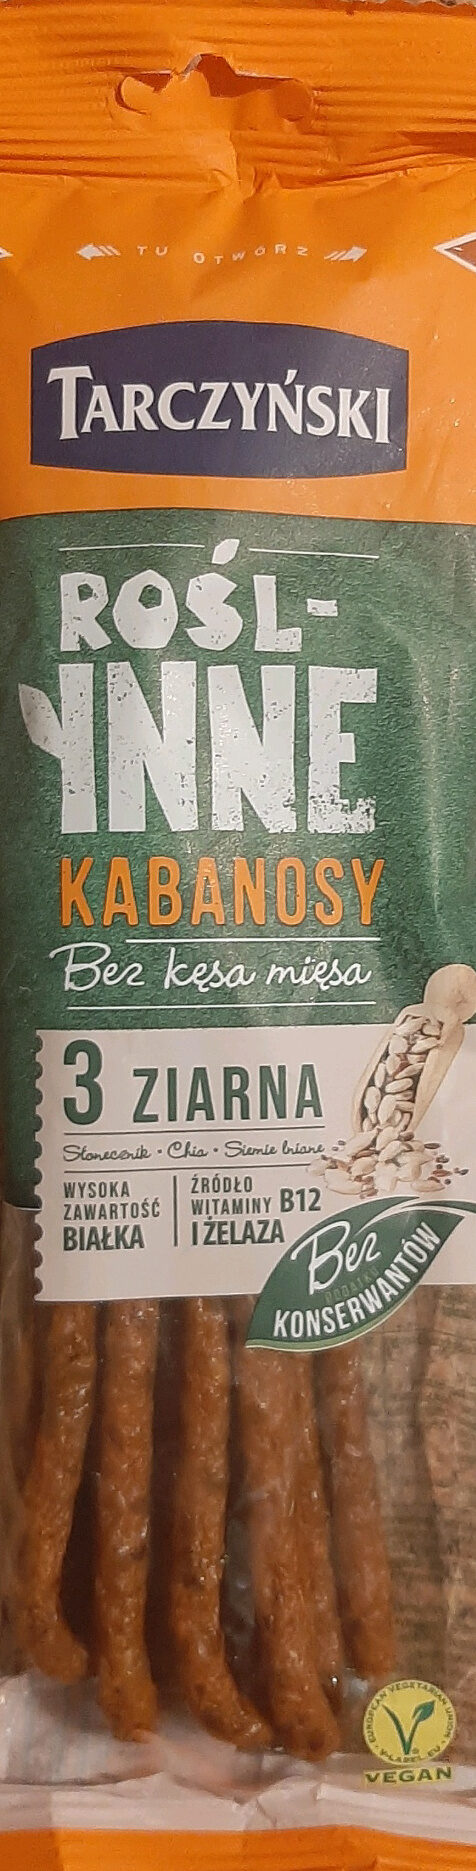 Rośl-inne Kabanosy 3 Ziarna - نتاج - pl